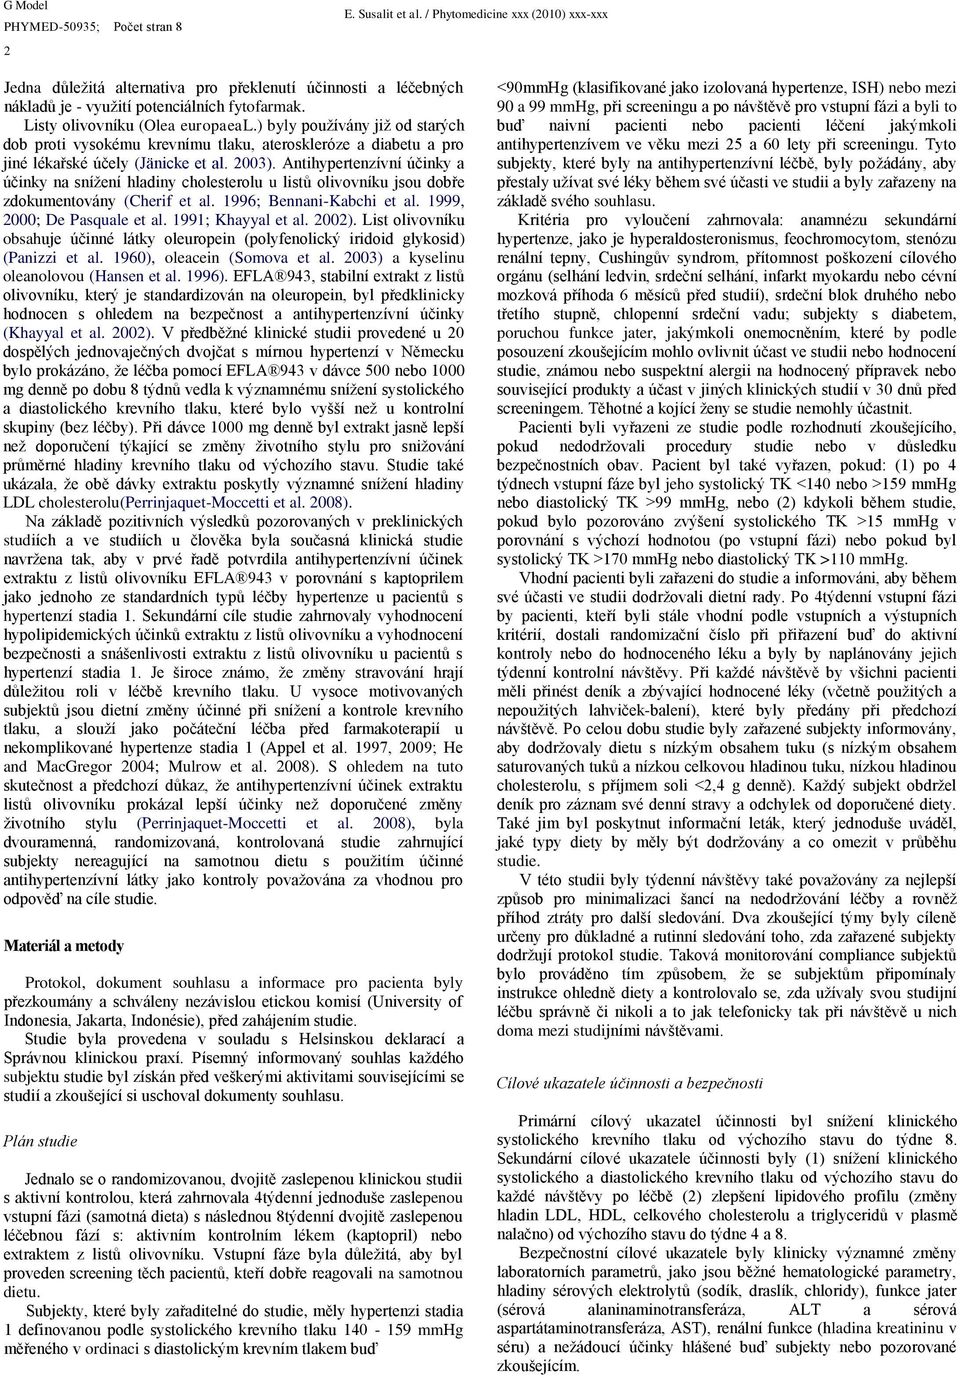 Antihypertenzívní účinky a účinky na snížení hladiny cholesterolu u listů olivovníku jsou dobře zdokumentovány (Cherif et al. 1996; Bennani-Kabchi et al. 1999, 2000; De asquale et al.